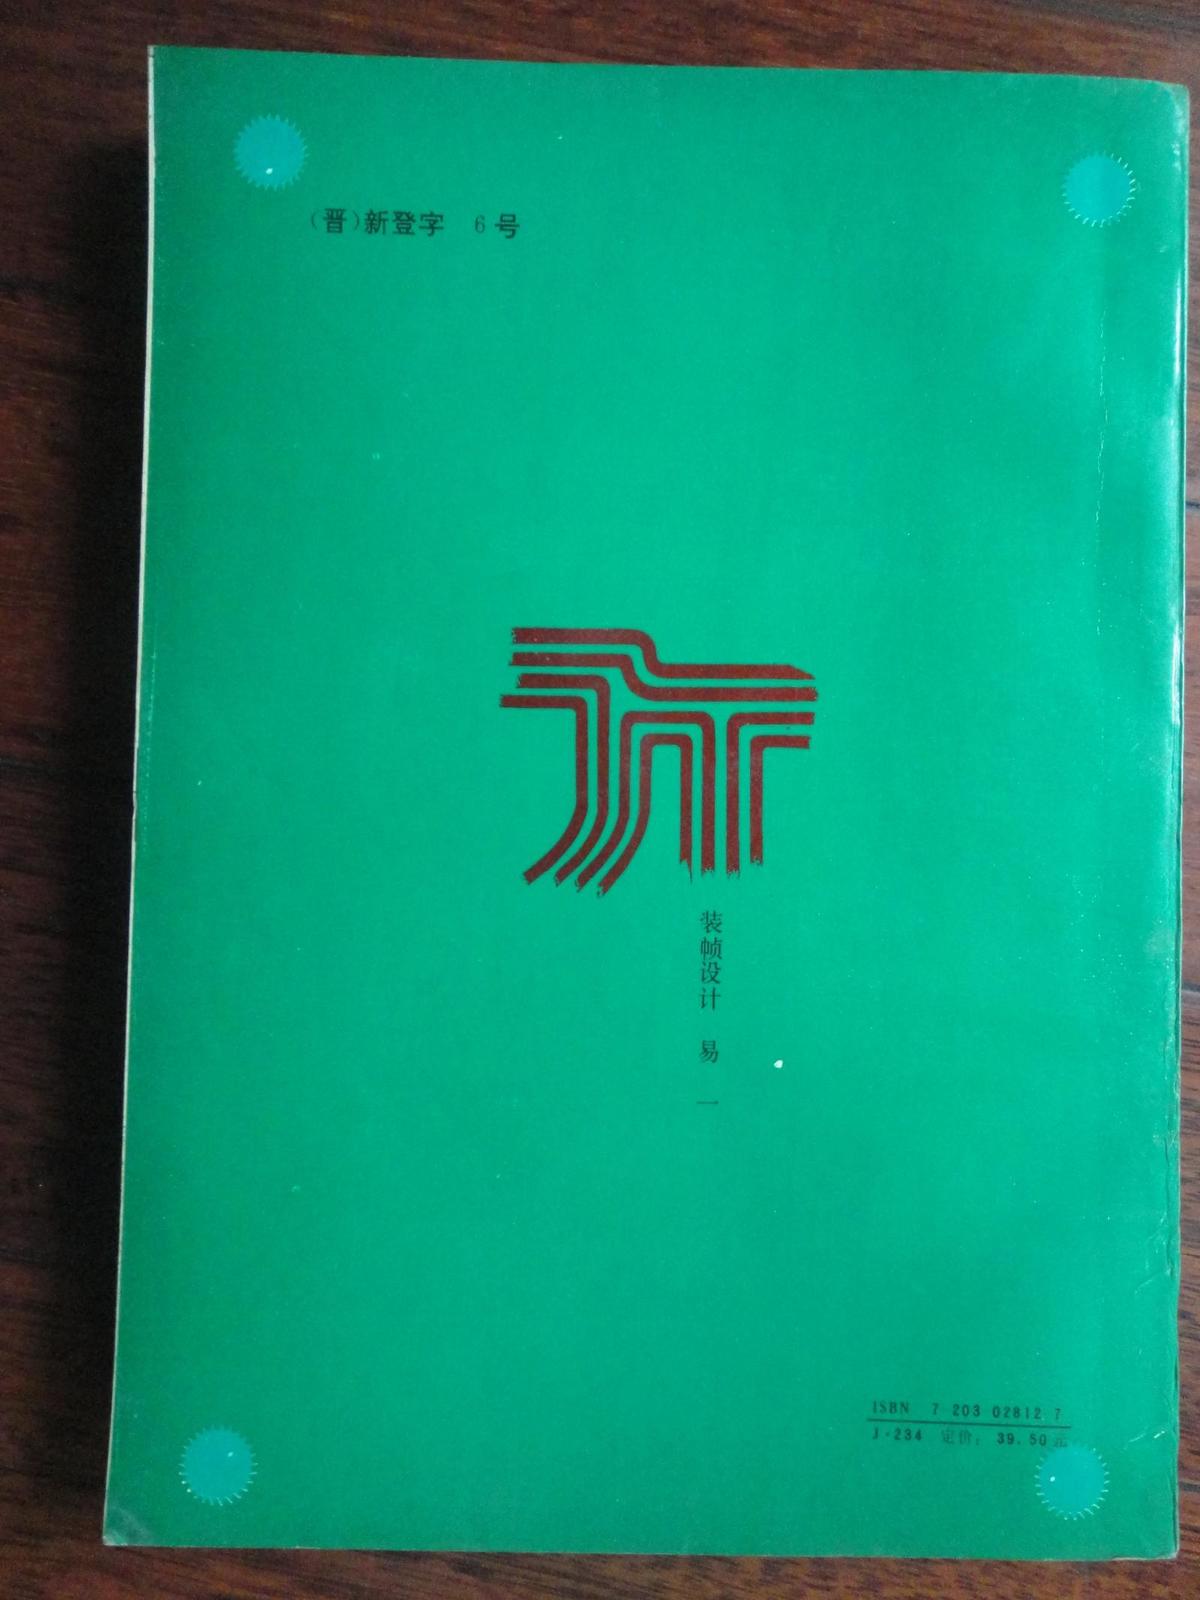 中国400地市州盟公路网图集-山西人民出版社1993版  S-231